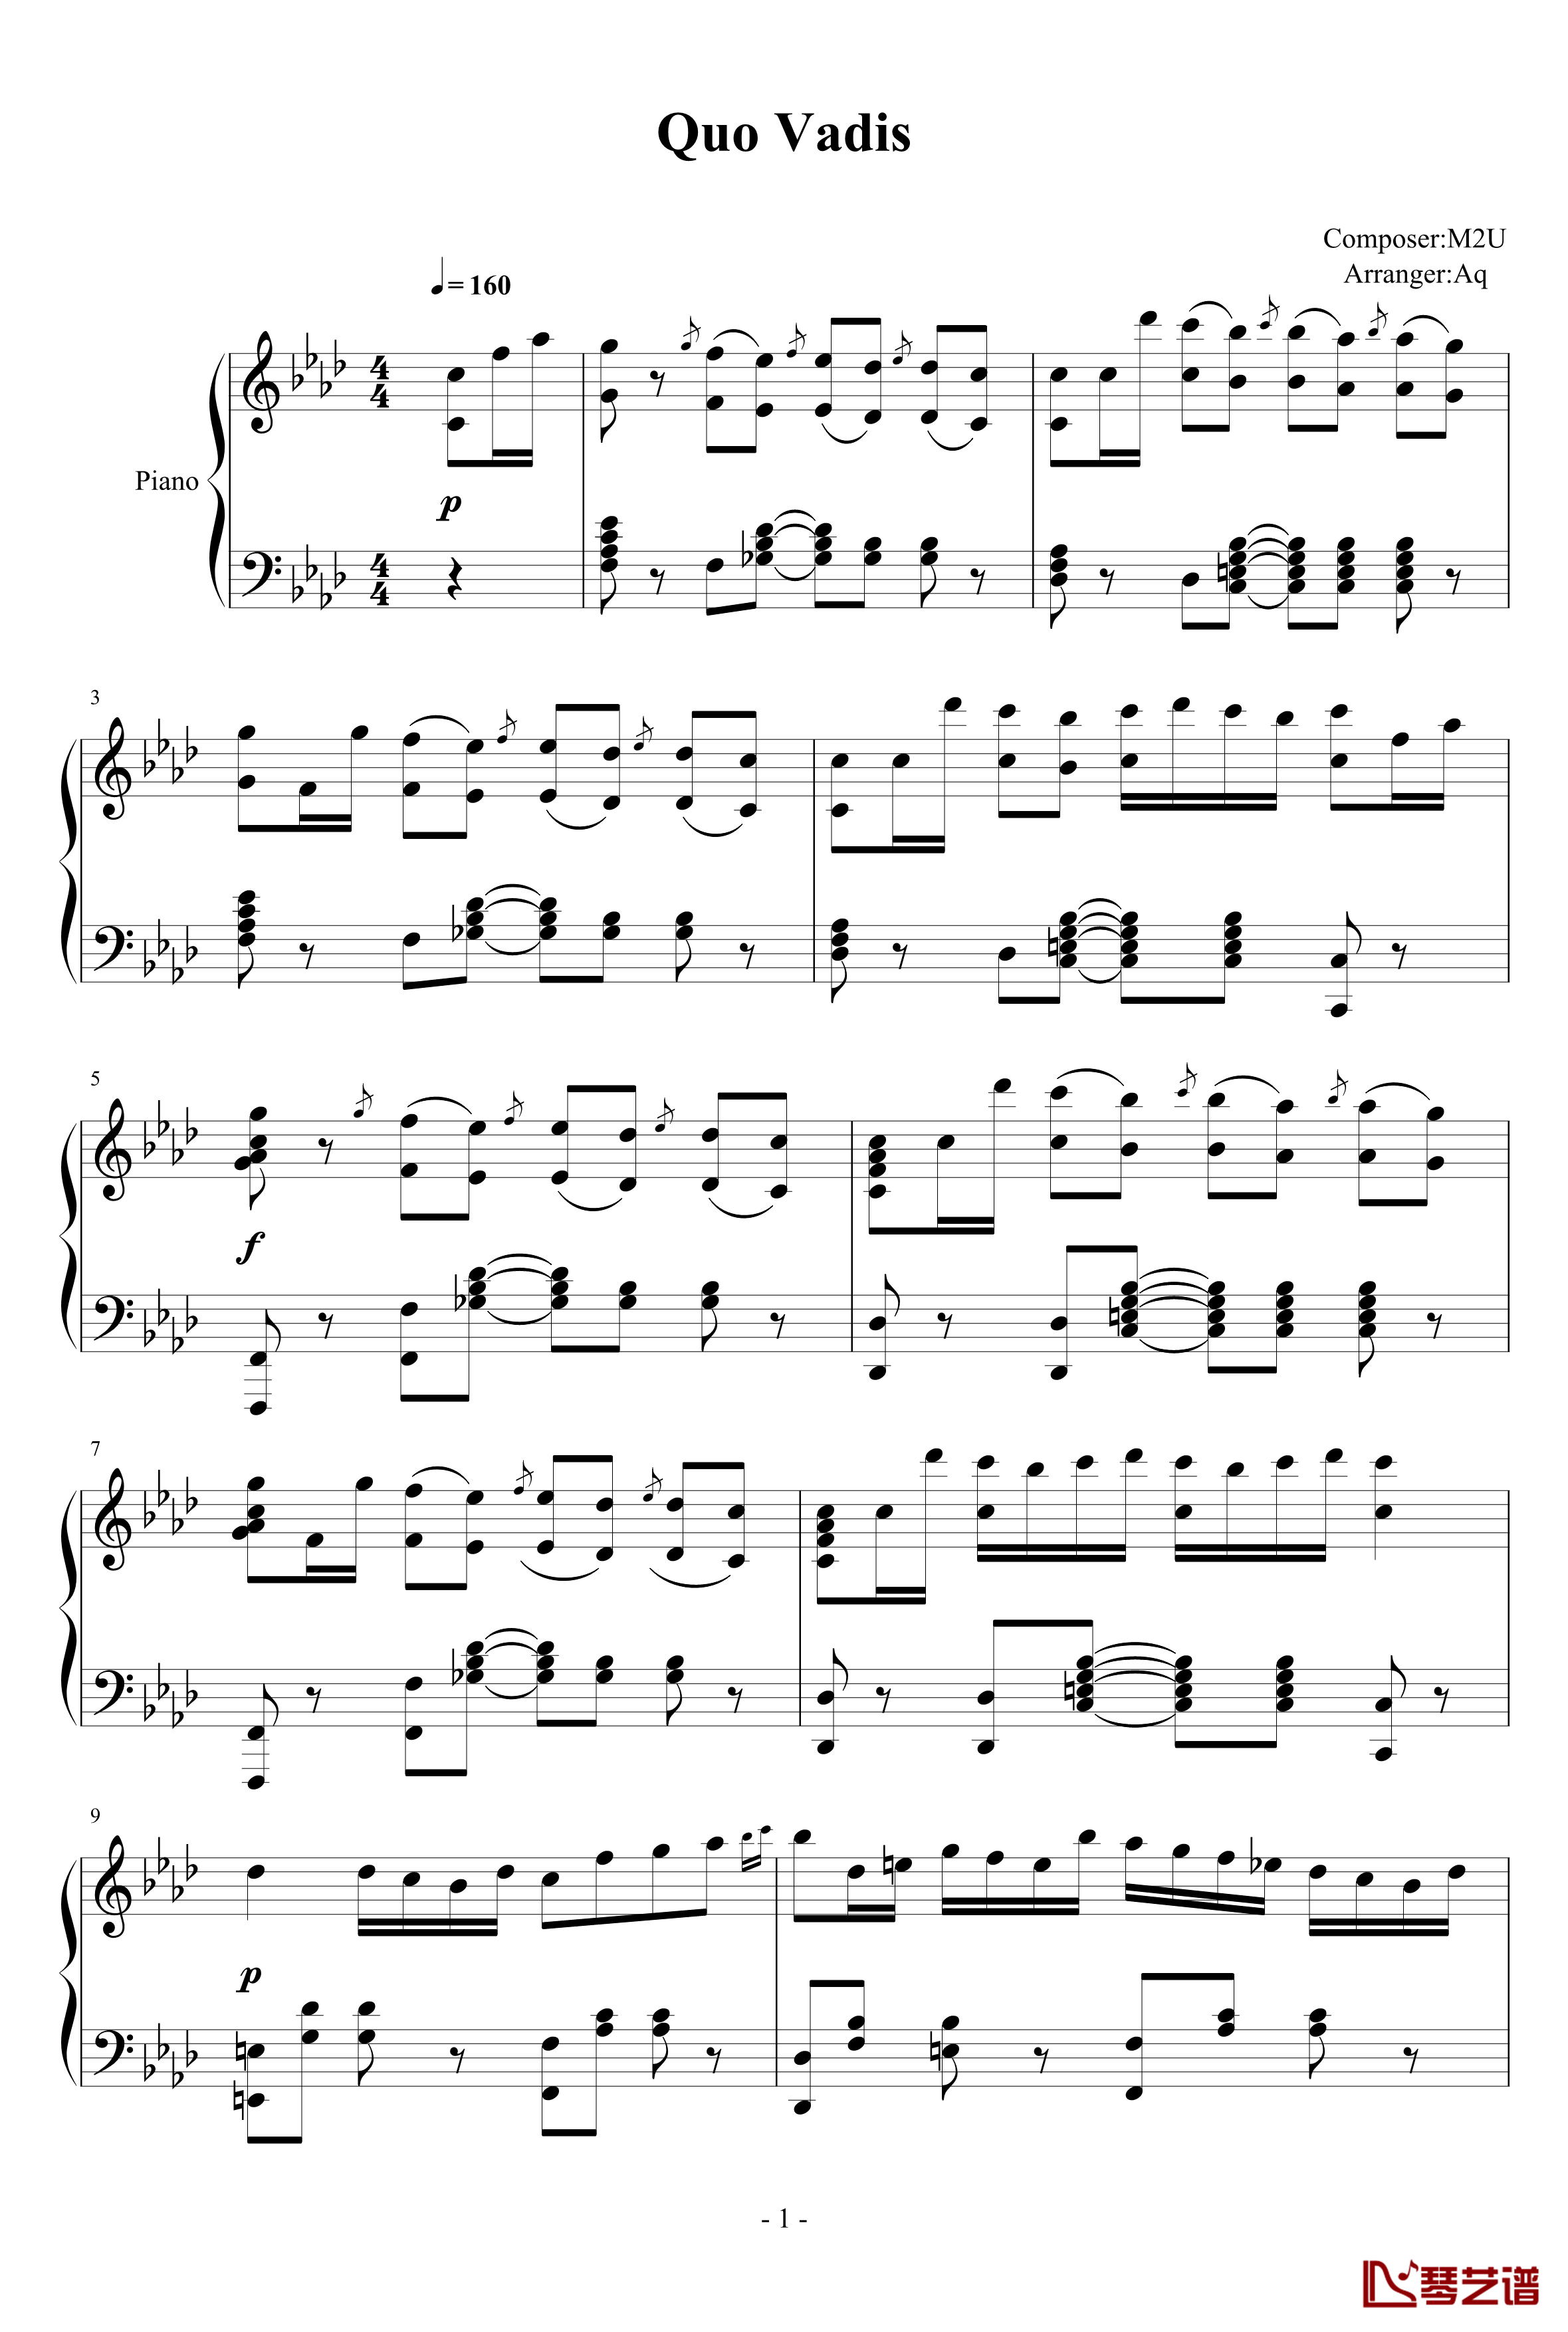 Piano ArrangementQuo Vadis钢琴谱-君往何处-M2U1